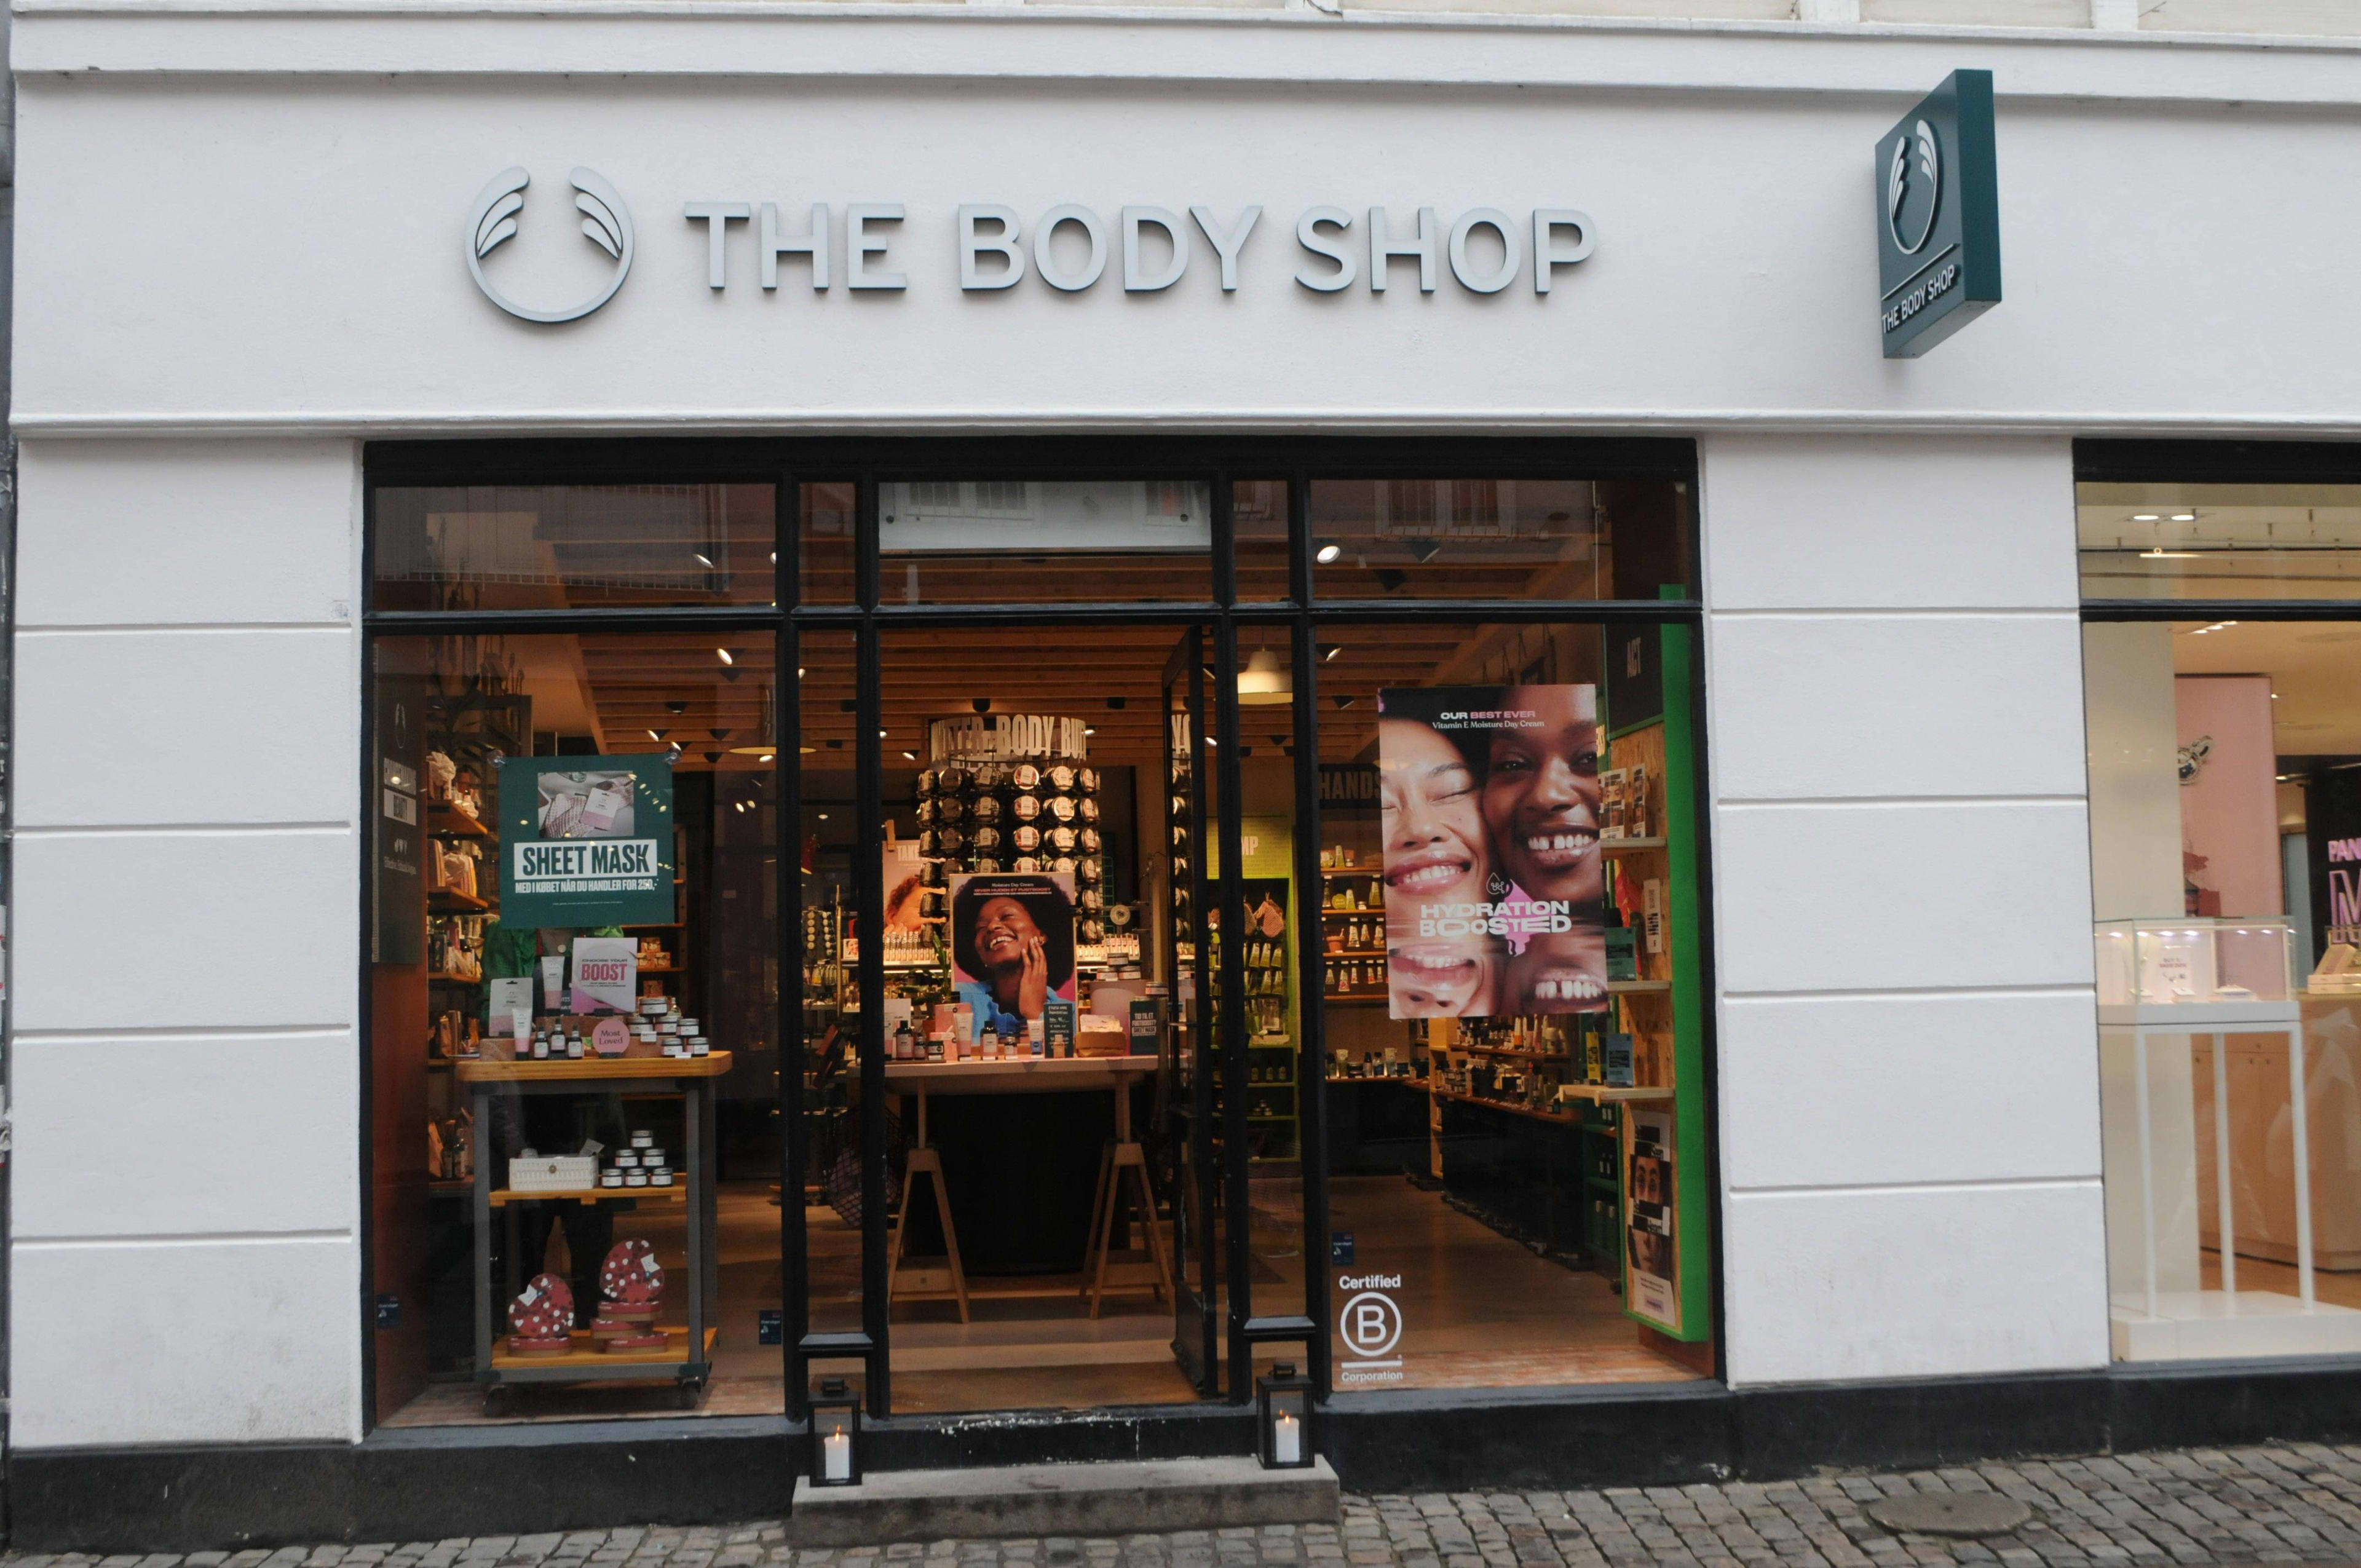 Faillissementsaanvragen The Body Shop in buitenland, Nederlandse webshop uit de lucht